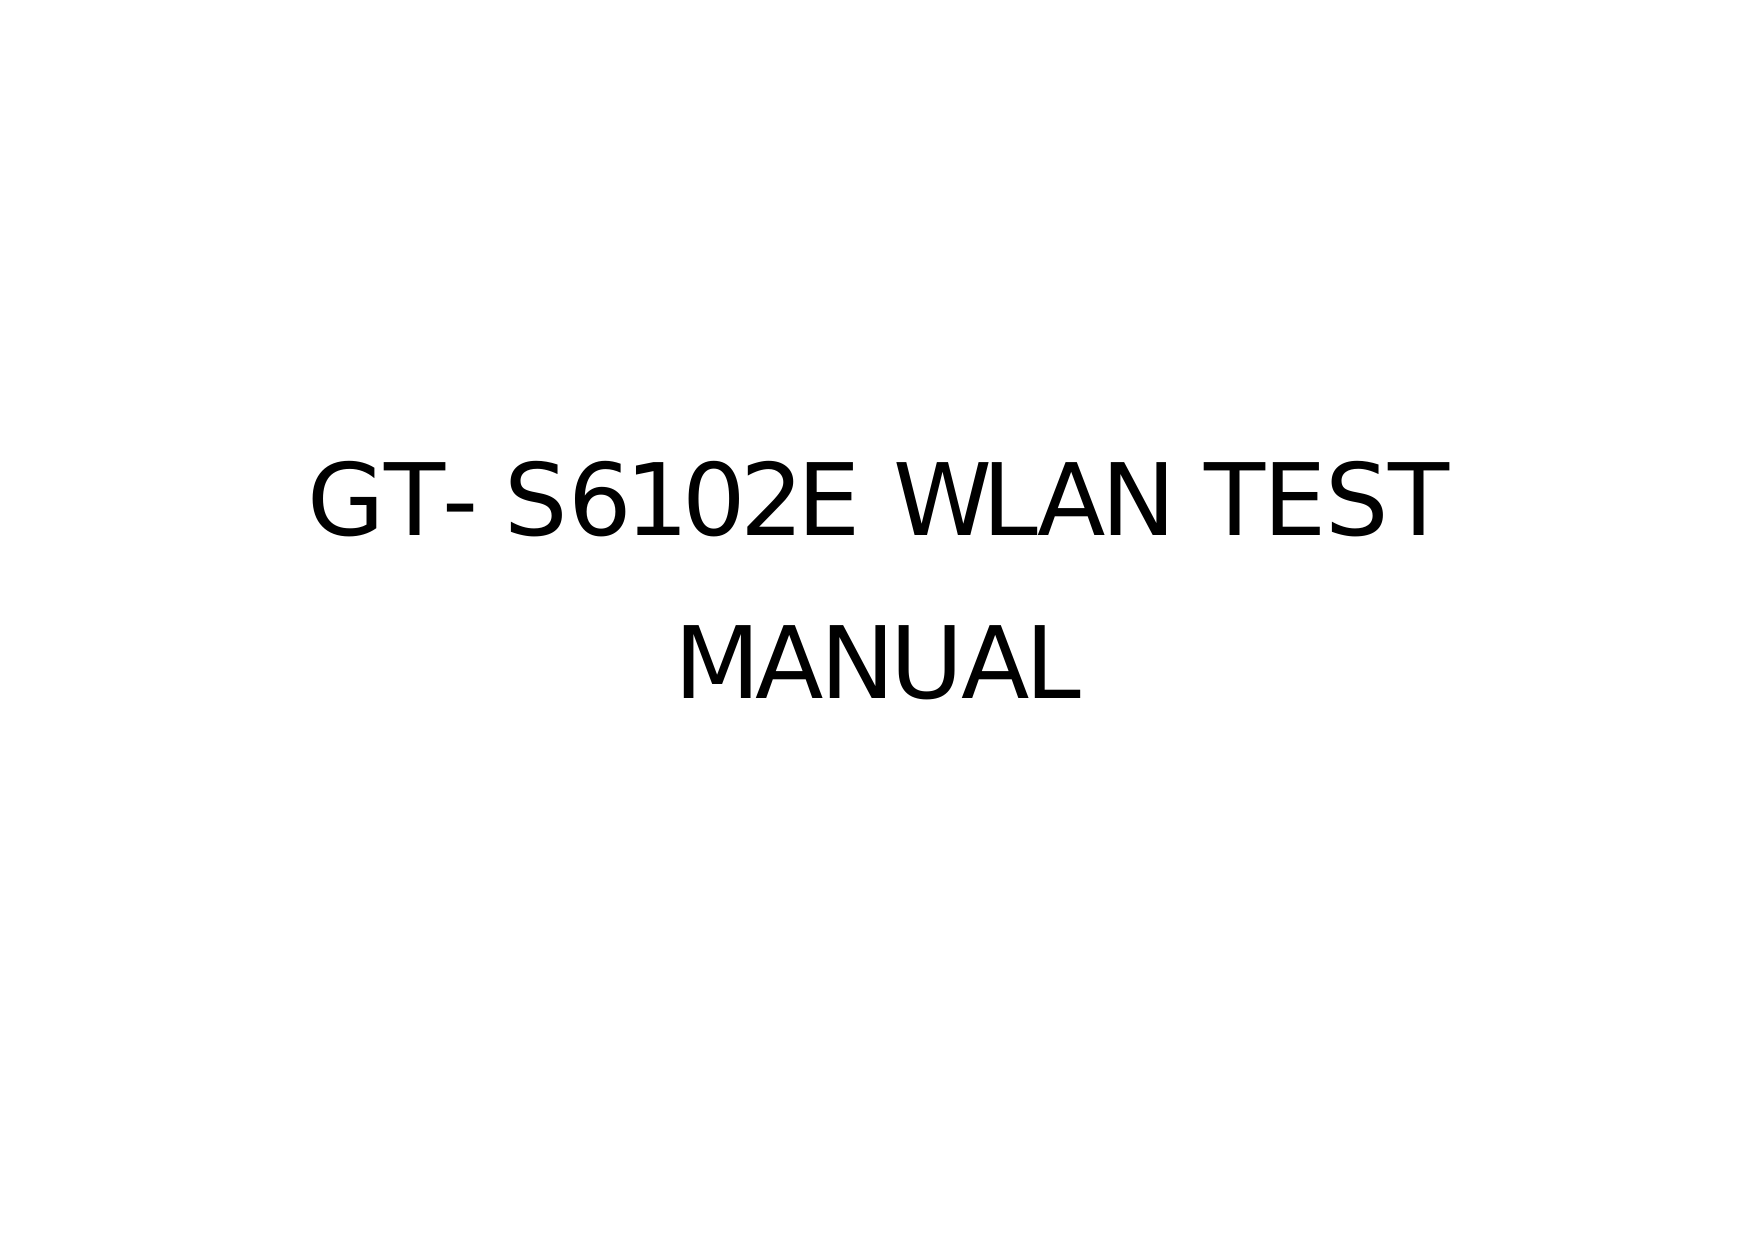   GT-S6102E WLAN TEST MANUAL 